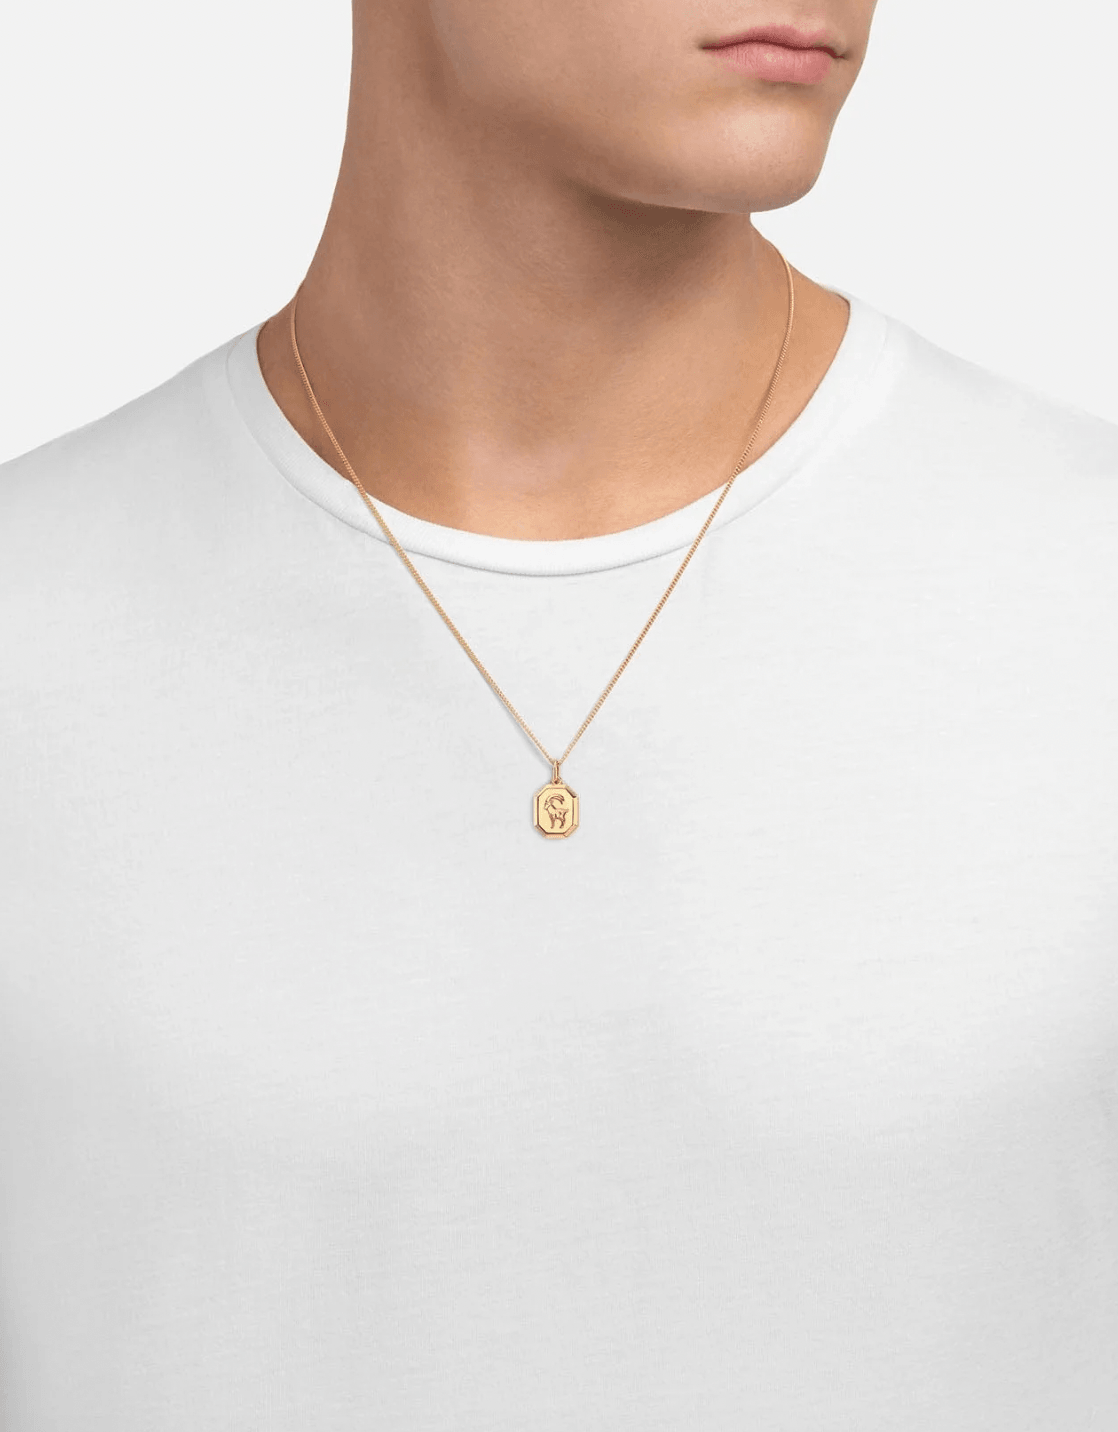 Capricorn Nyle Pendant Necklace by Miansai - Haven